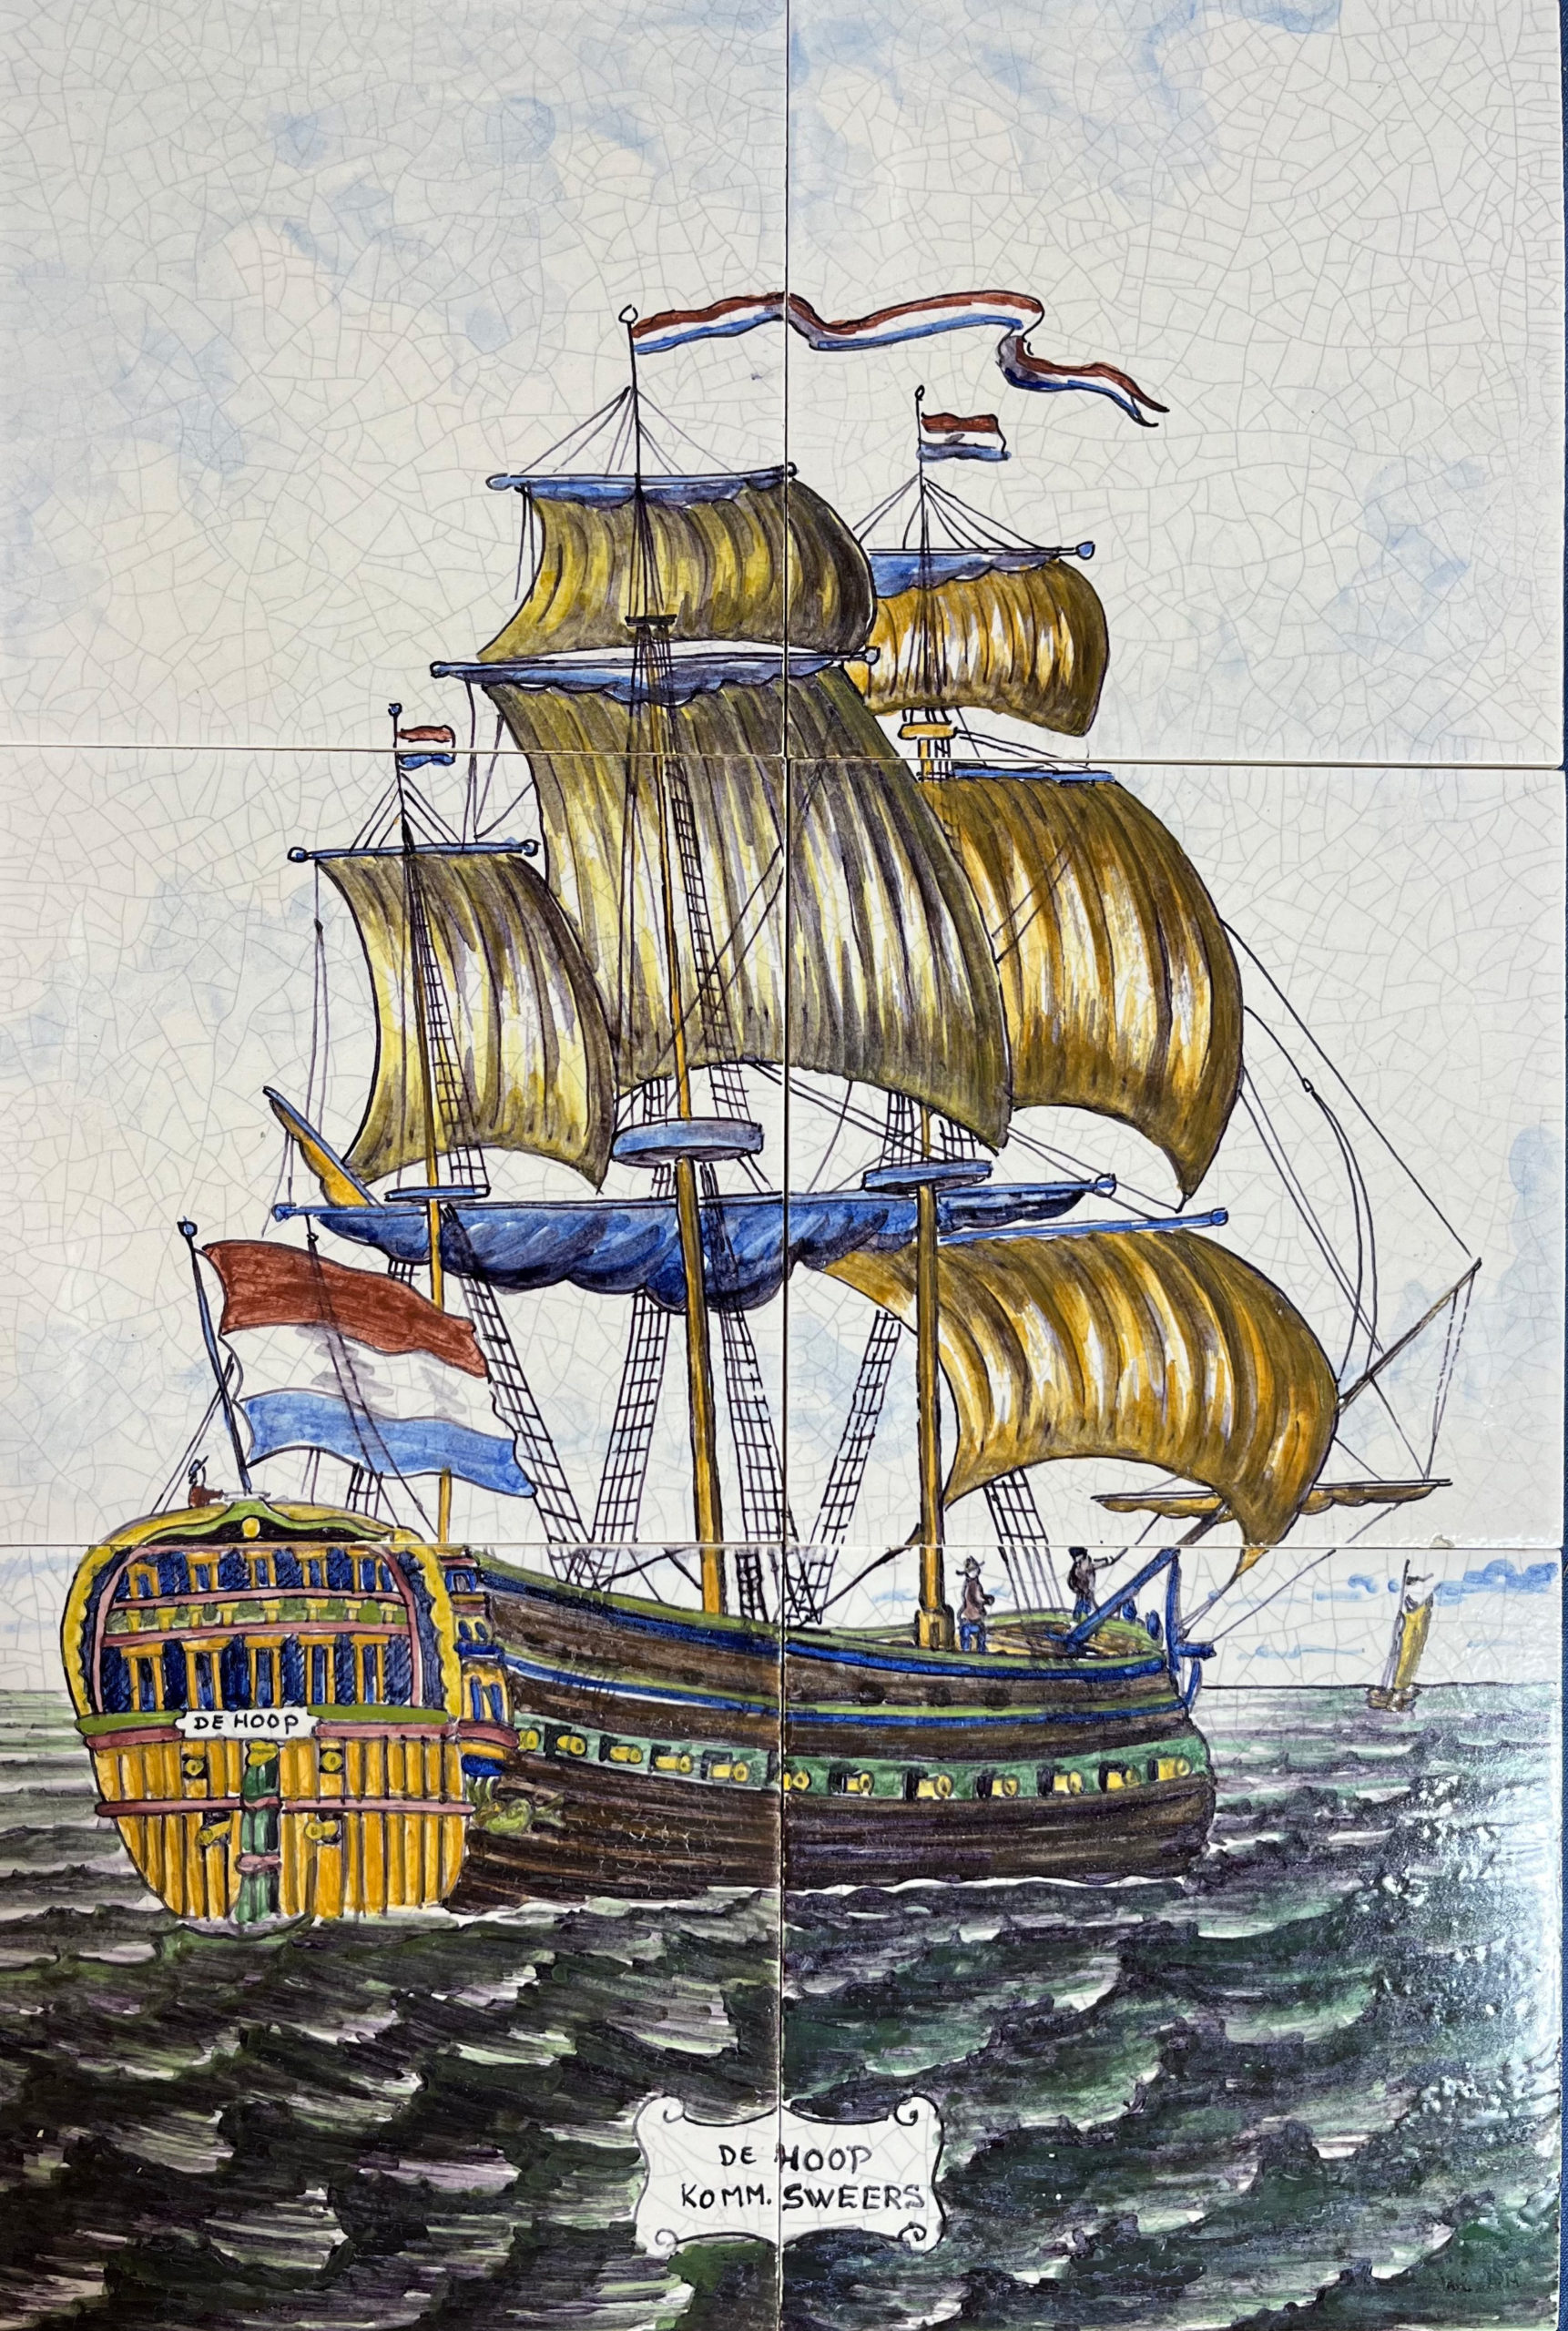 W-33 - Westraven: Murals - Ship on 6 tiles